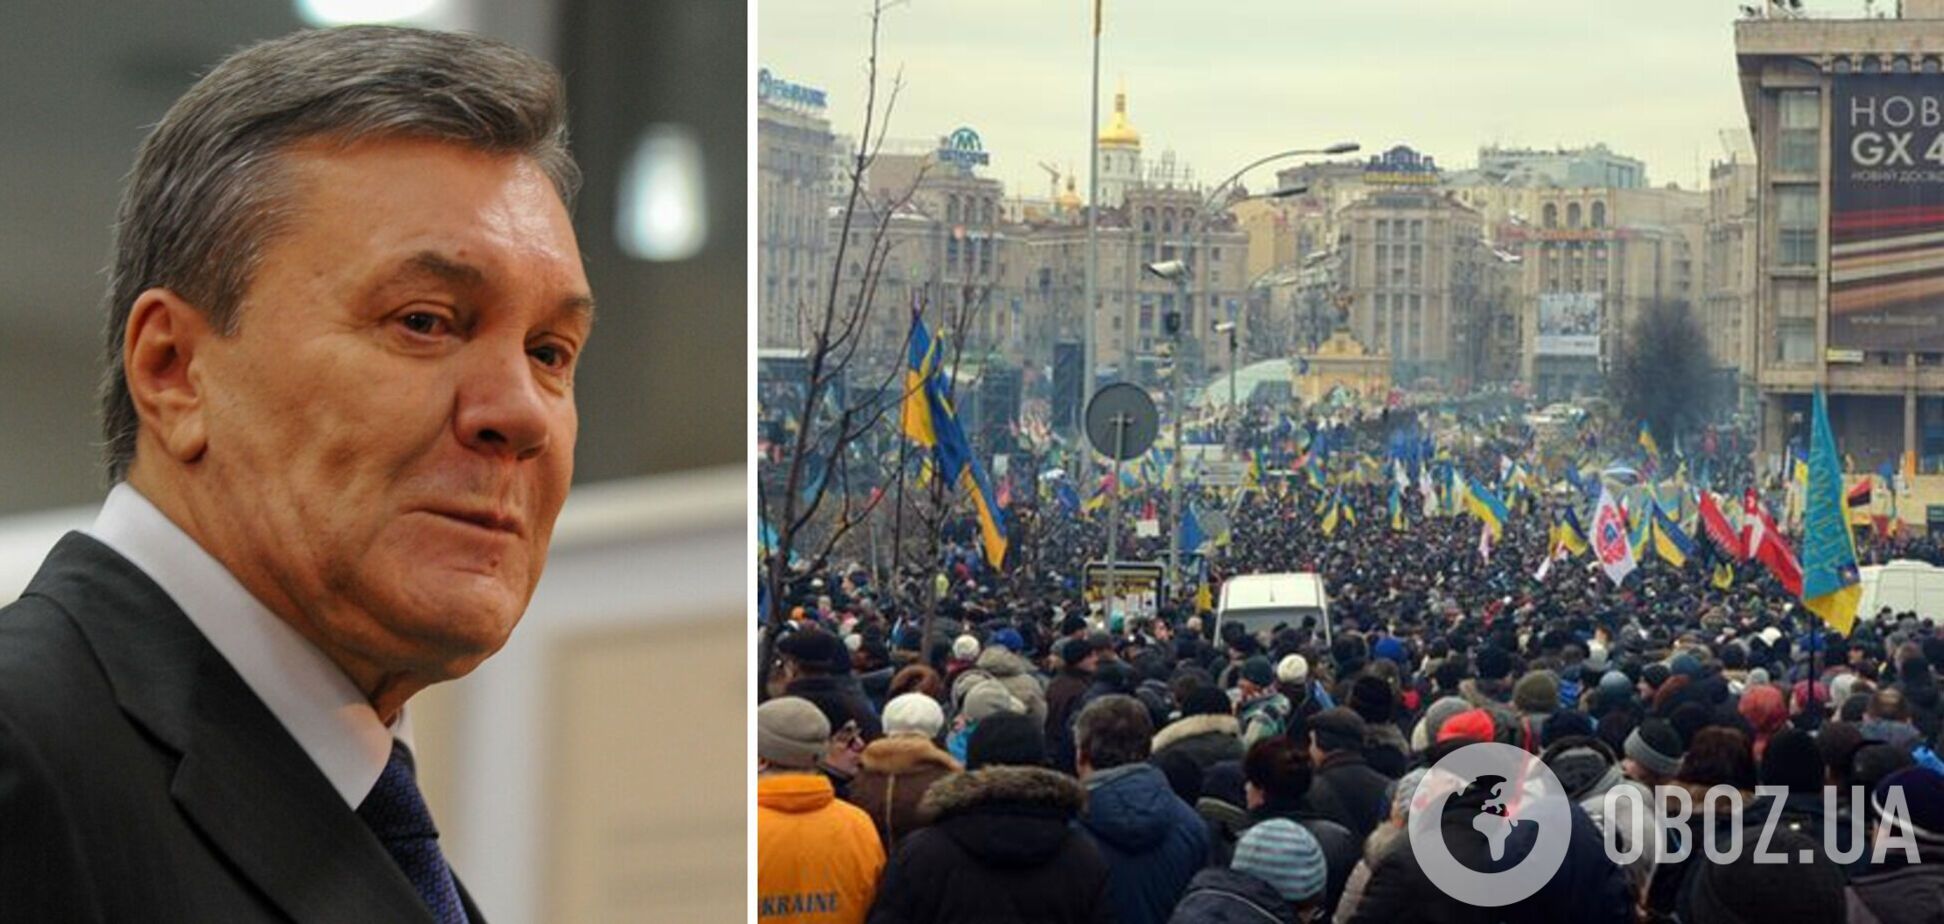 Янукович у постановочній статті звинуватив Майдан-2014 у війні в Україні та розповів про 'особисту драму'